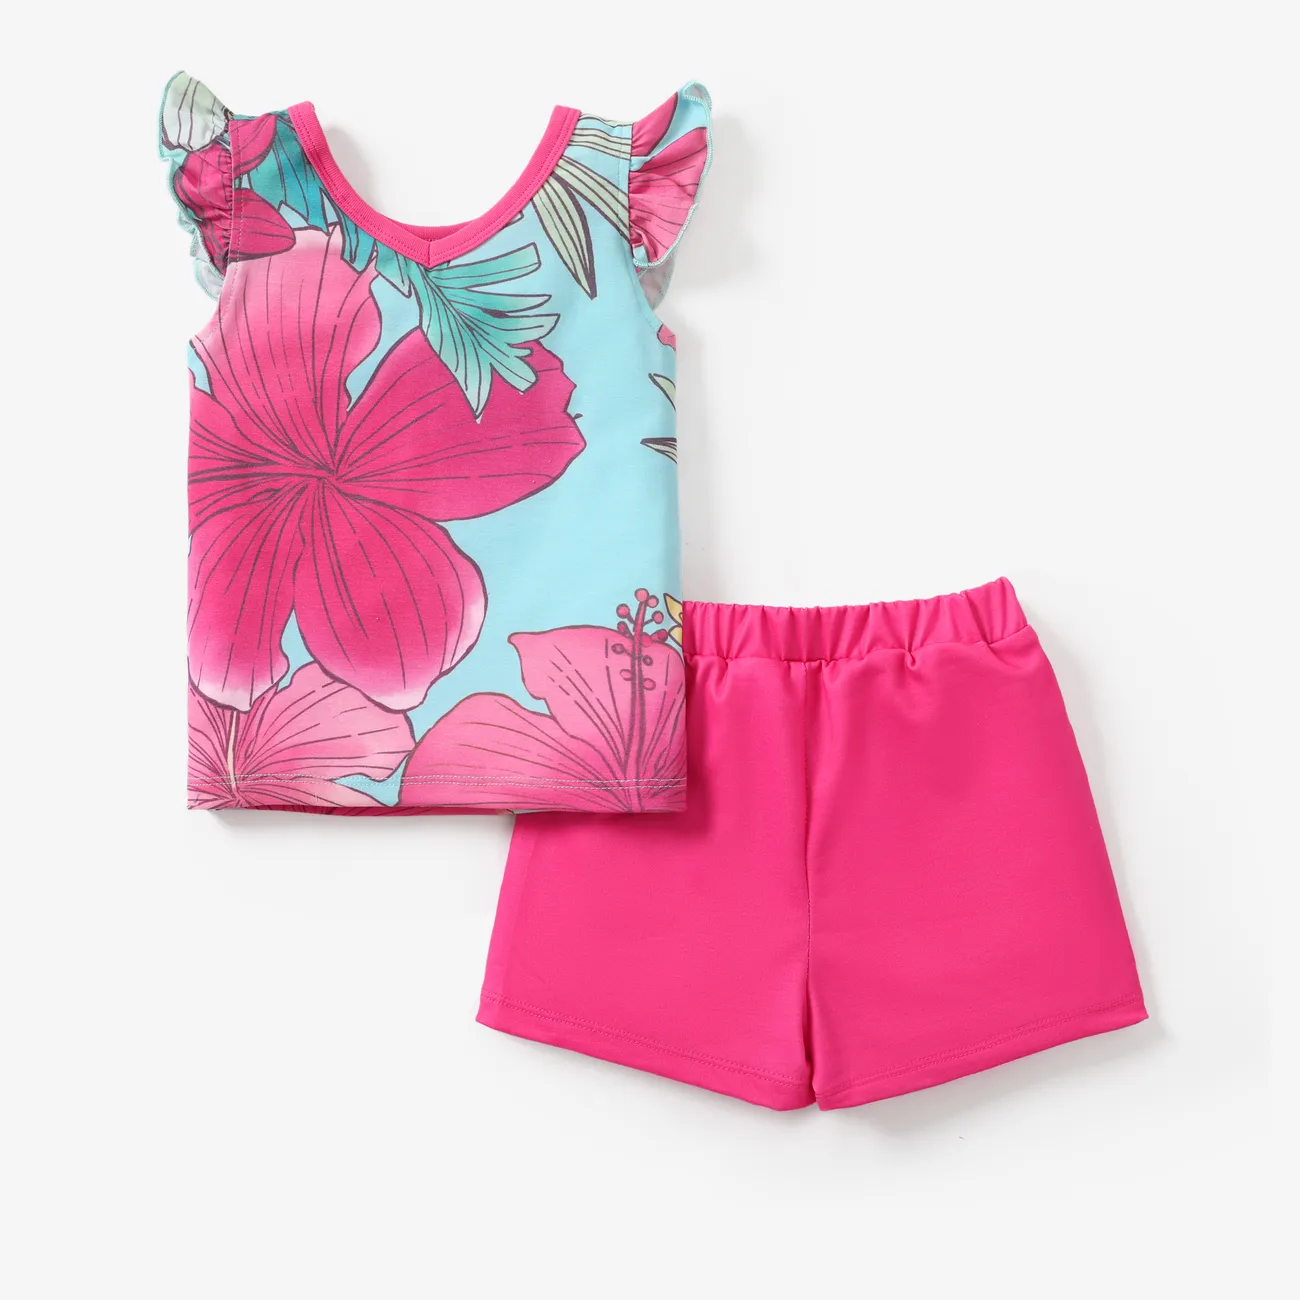  Disney Princess 2pcs Toddler Girls Naia™ Character Floral Print Ruffled Top with Shorts Set Pink big image 1